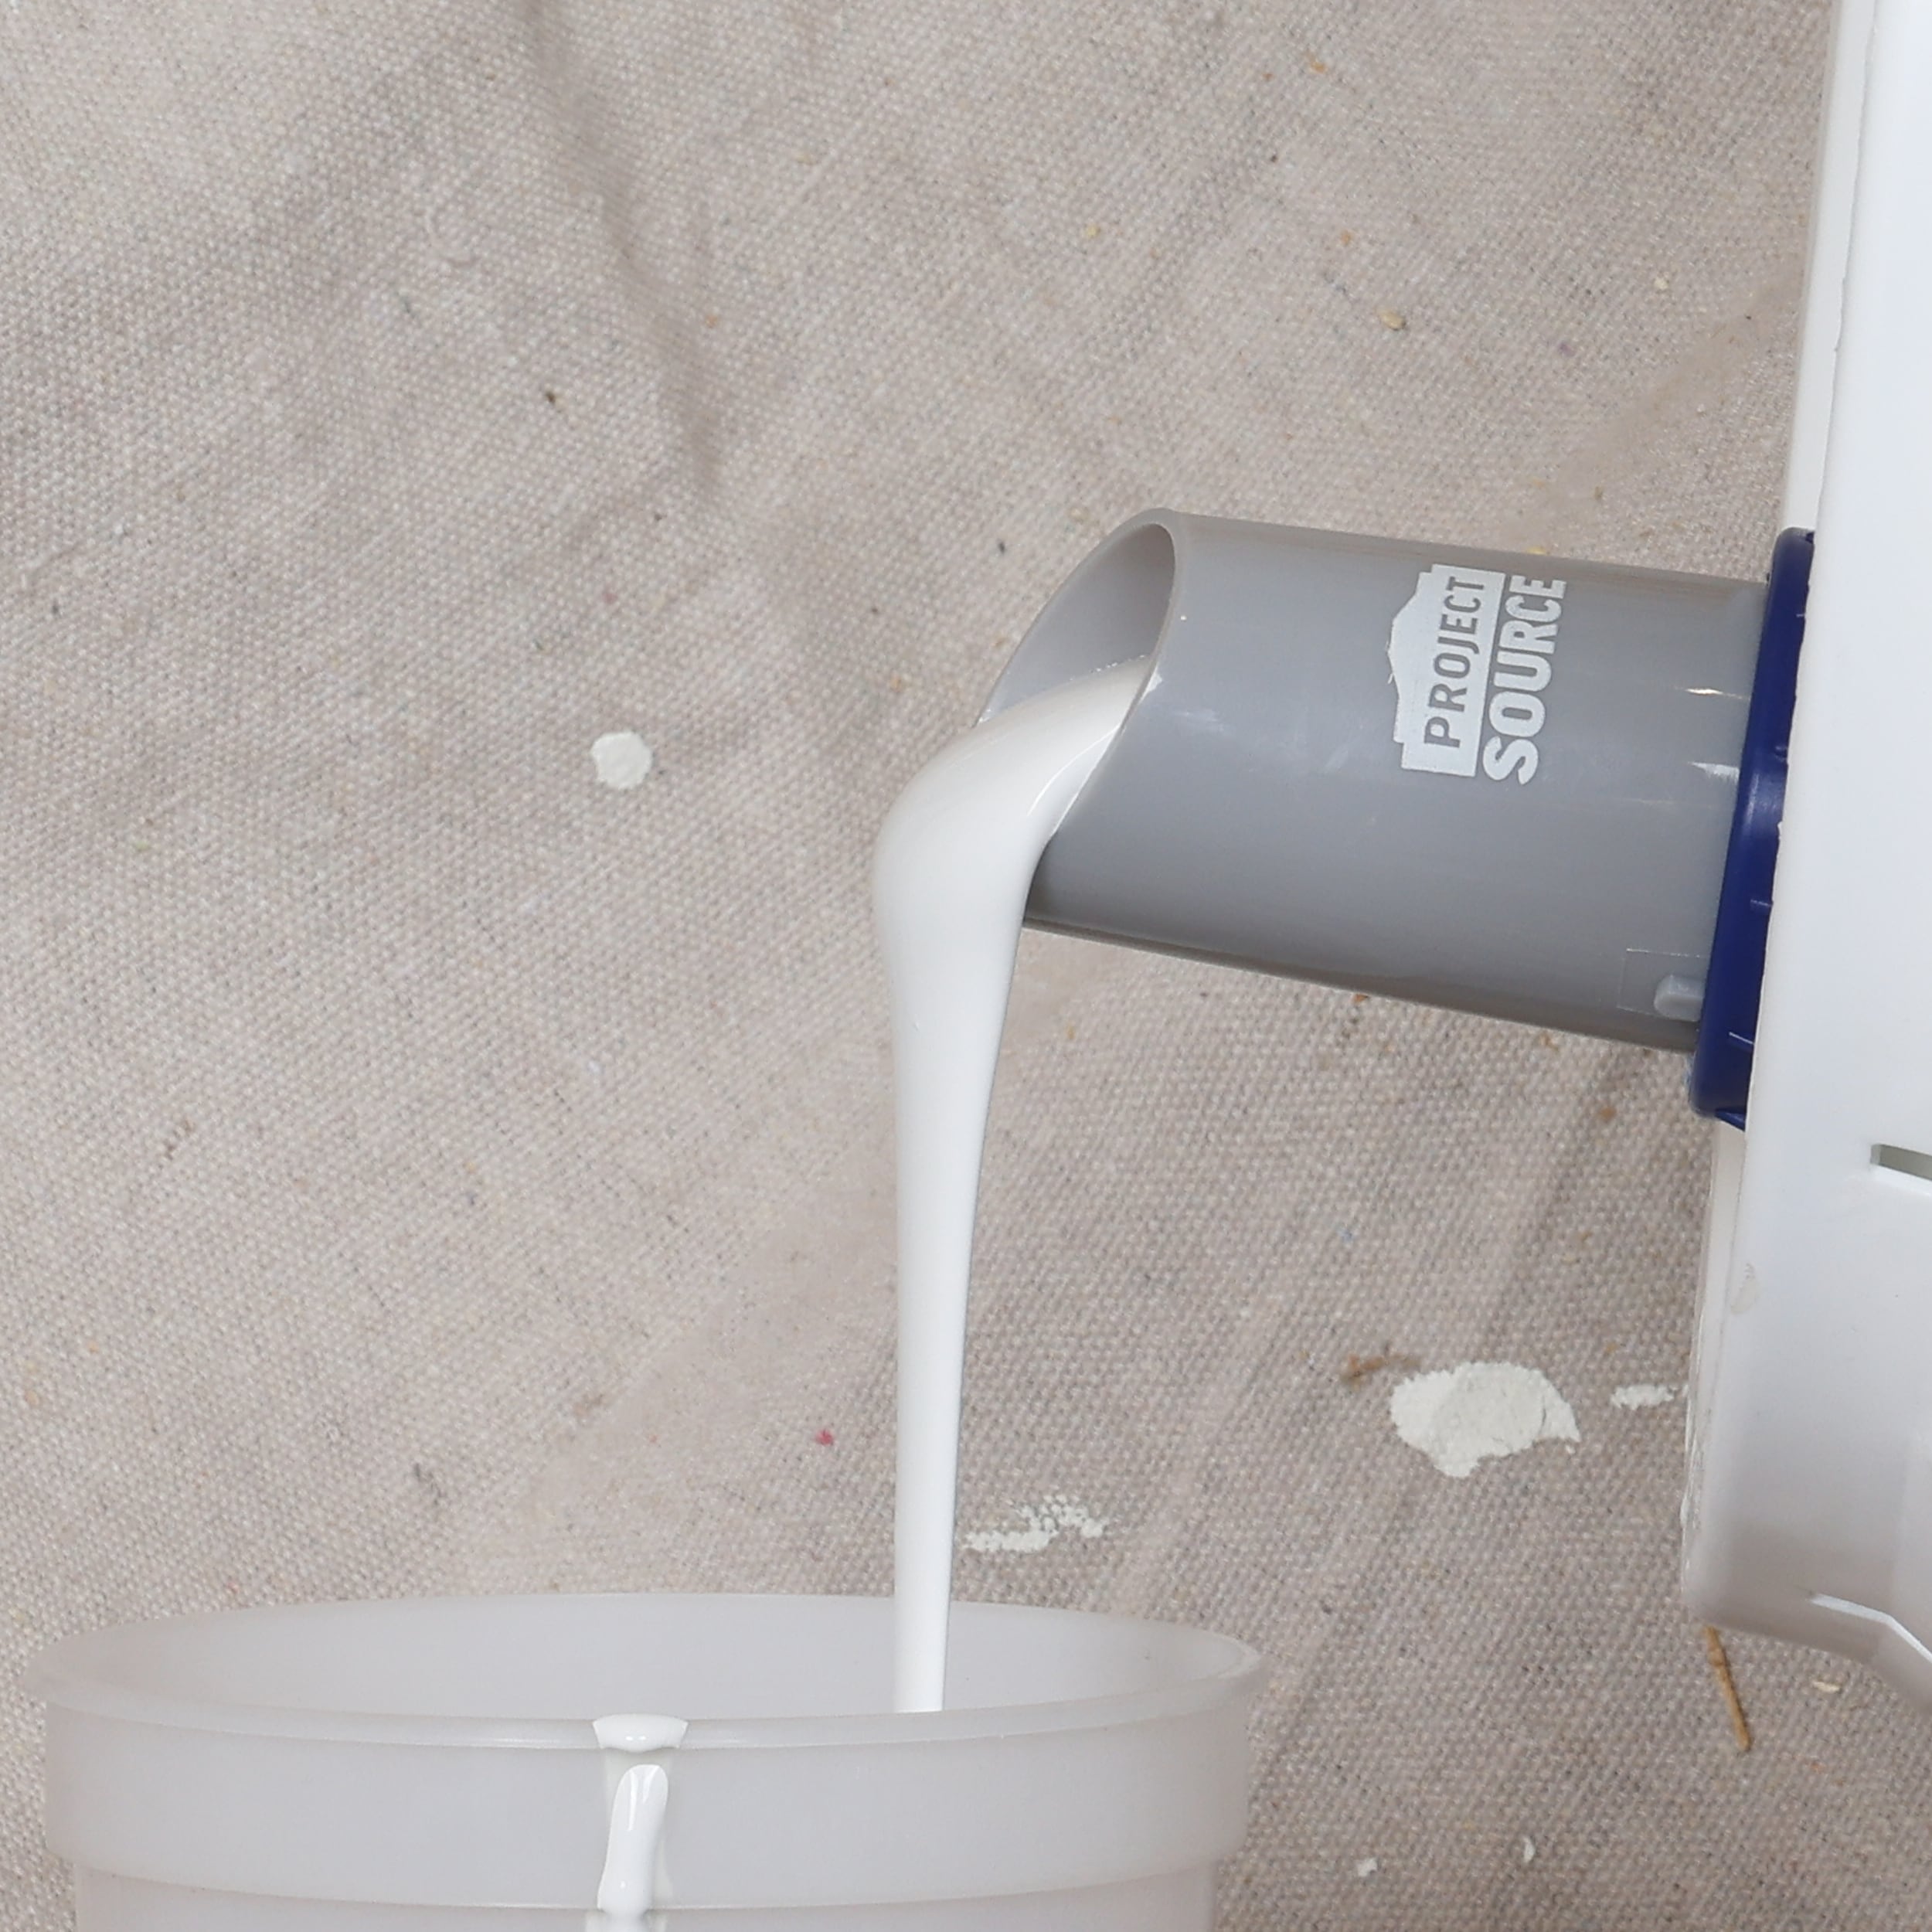 Project Source Paint spout Bucket Lid Attachment Paint Can Pour